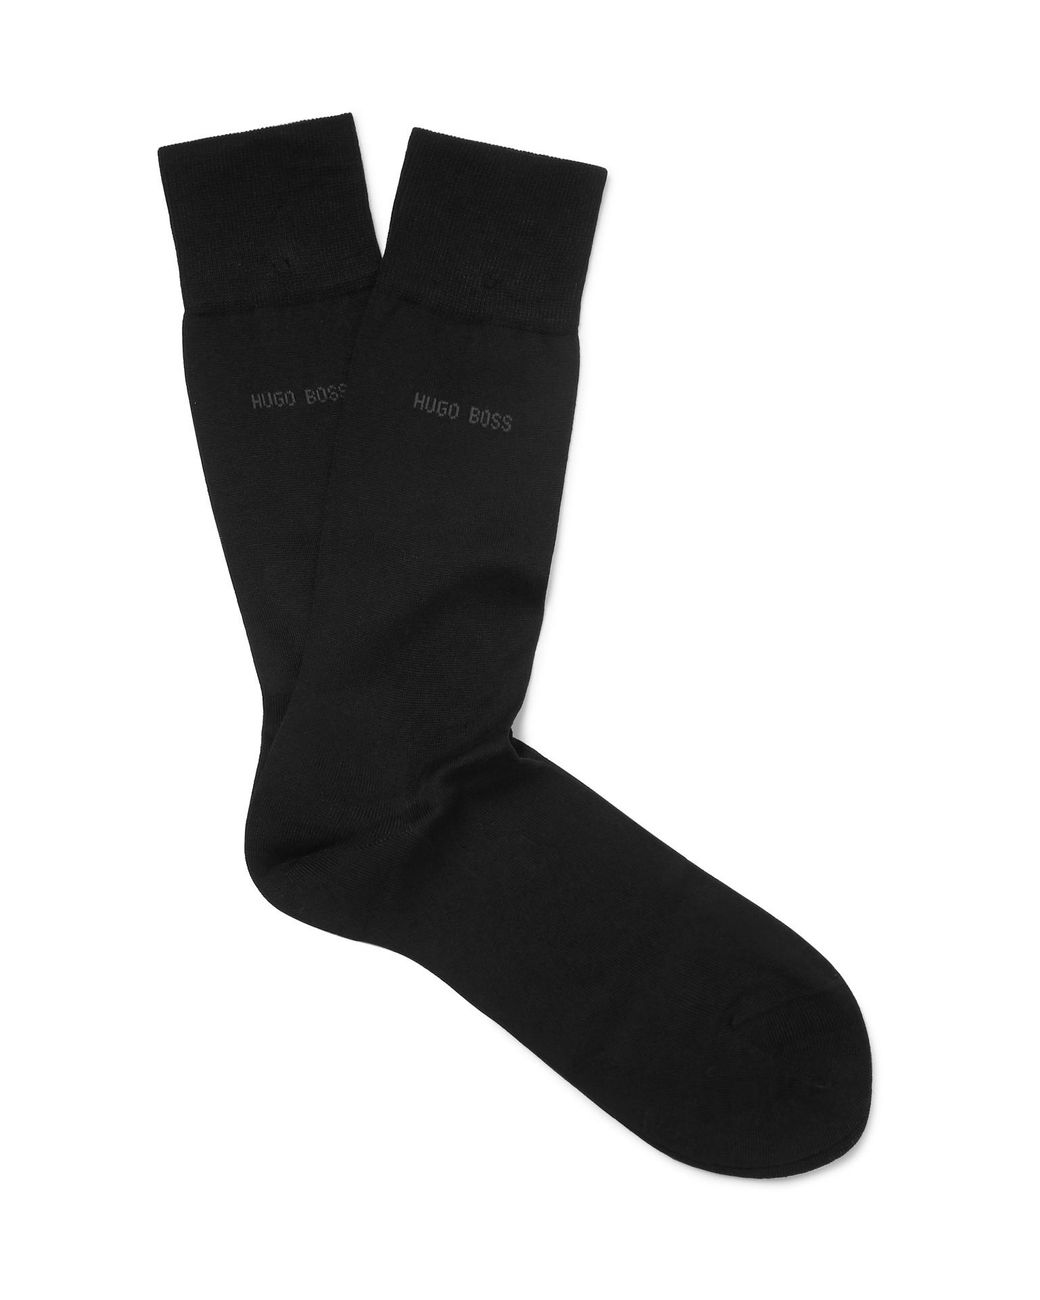 BOSS by Hugo Boss Mercerised Cotton Socks in Black for Men - Lyst